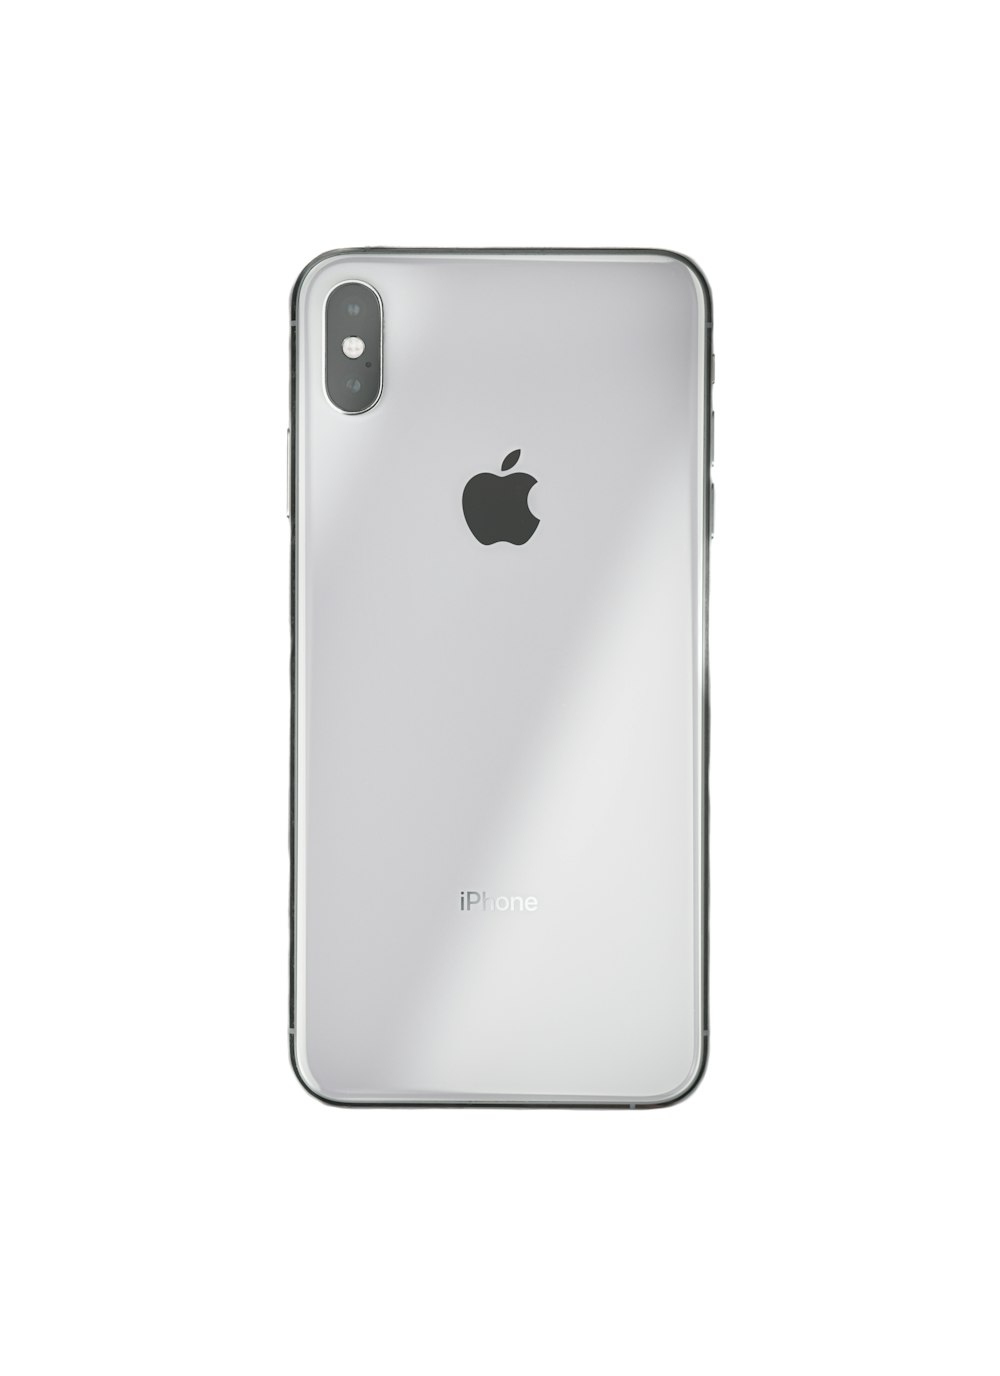 Black iphone 7 plus on white background photo – Free Bryan Image on Unsplash